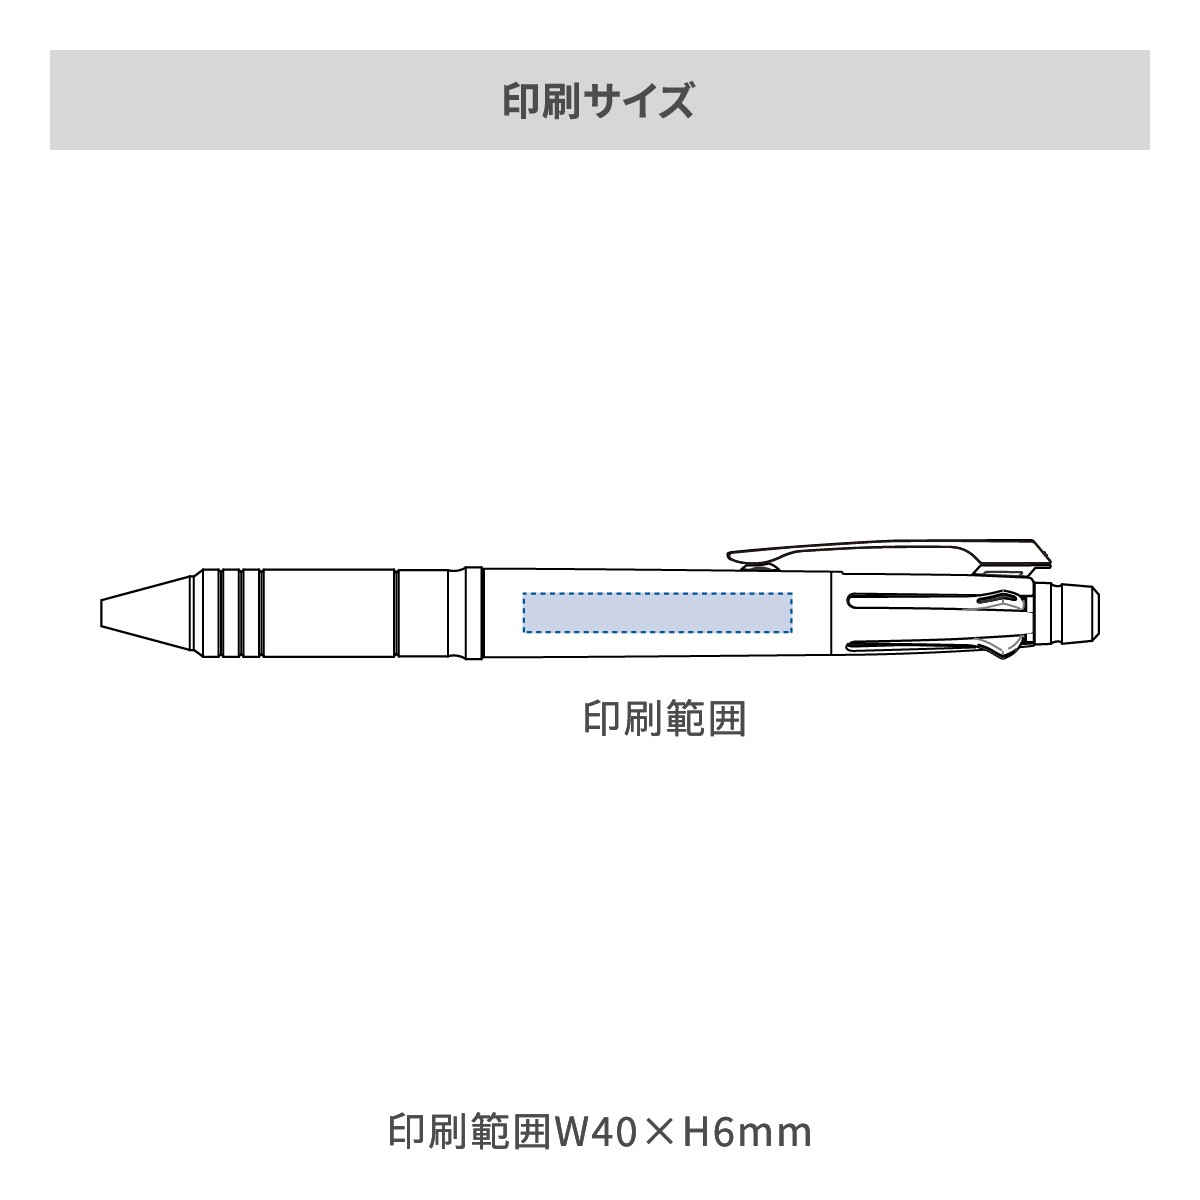 三菱鉛筆 ジェットストリーム メタルエディション 多機能ペン 4&1 0.5mmの名入れ範囲